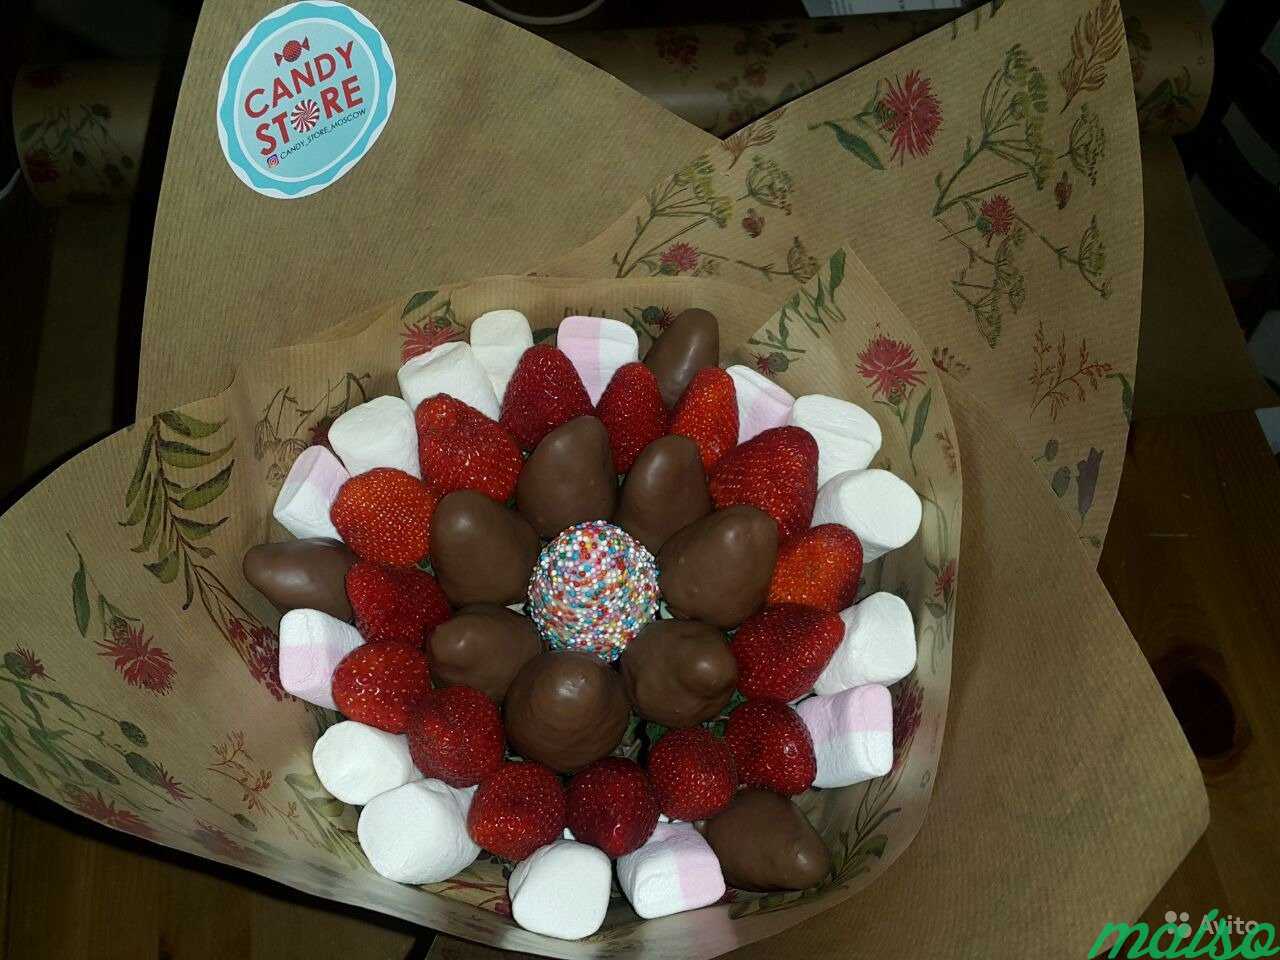 Вкусные и эффектные букеты из клубники в шоколаде в Москве. Фото 6